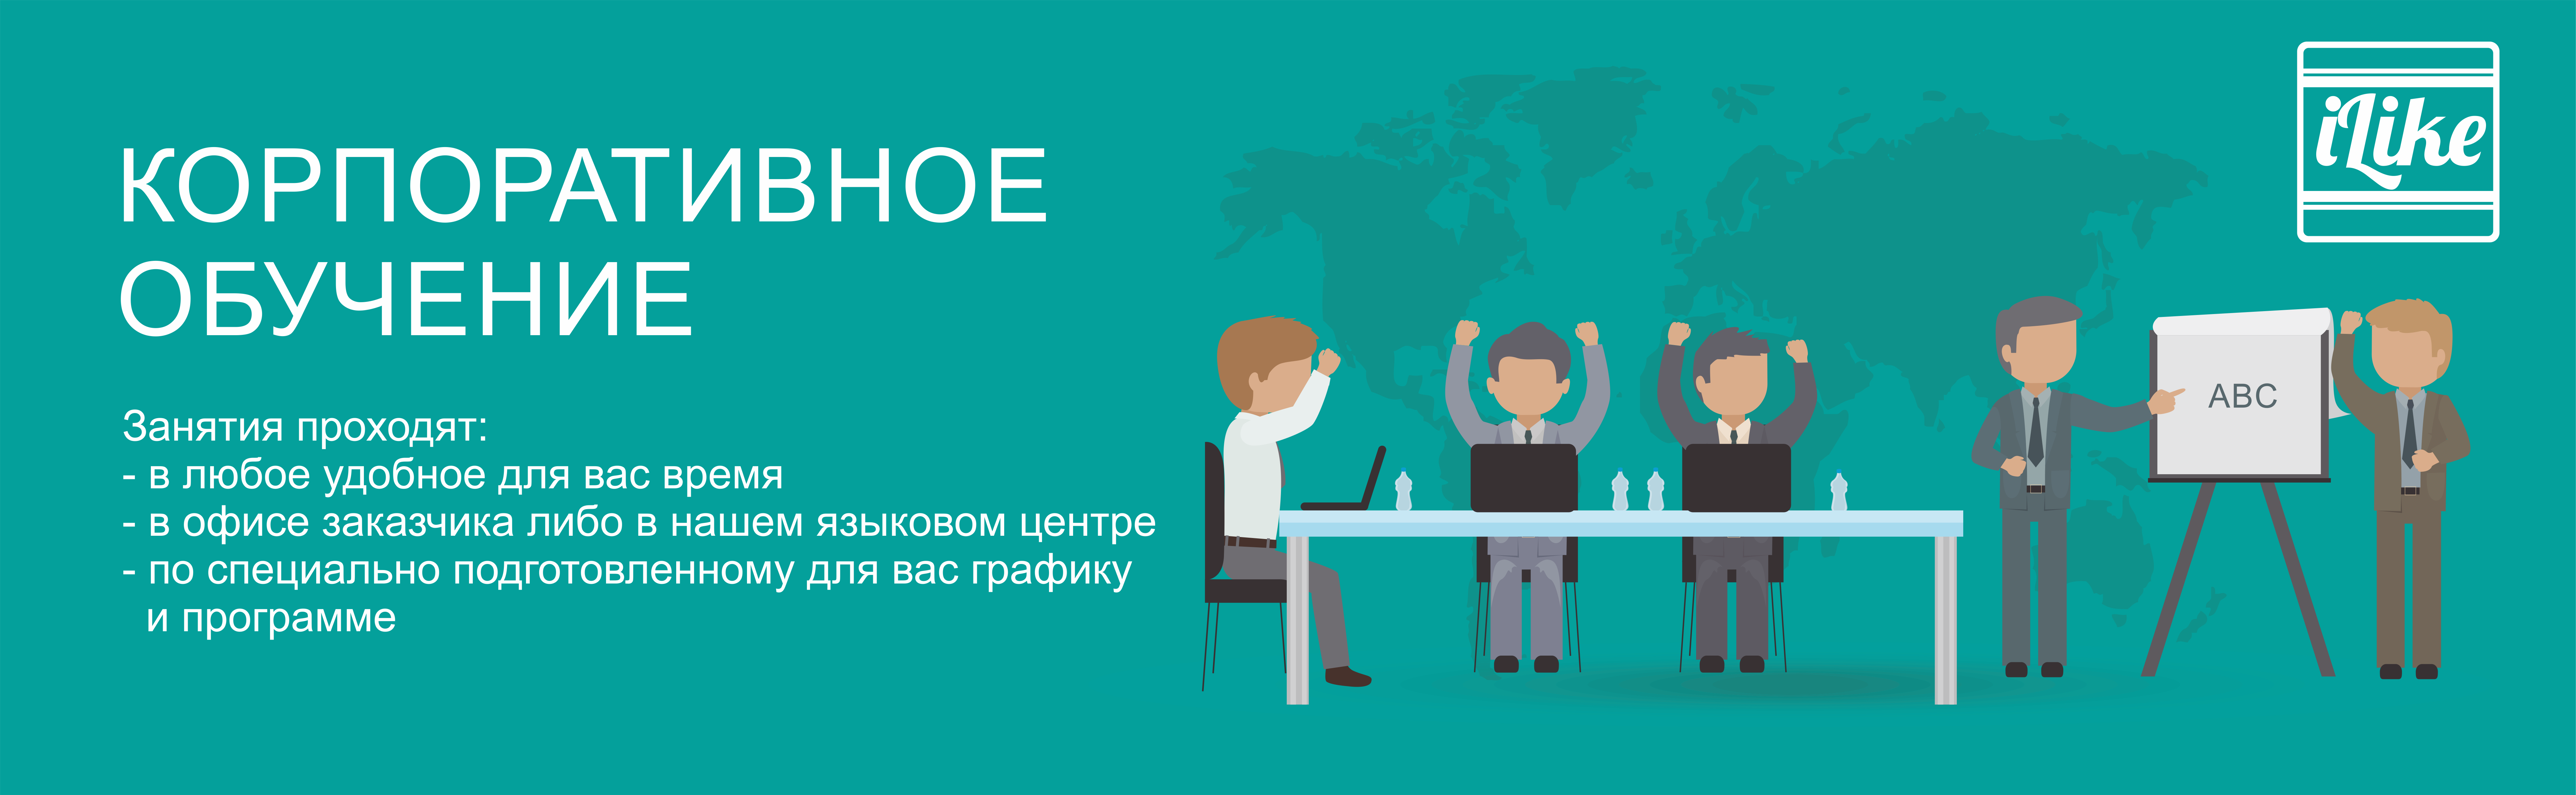 Корпоративное обучение английскому языку в Челябинске